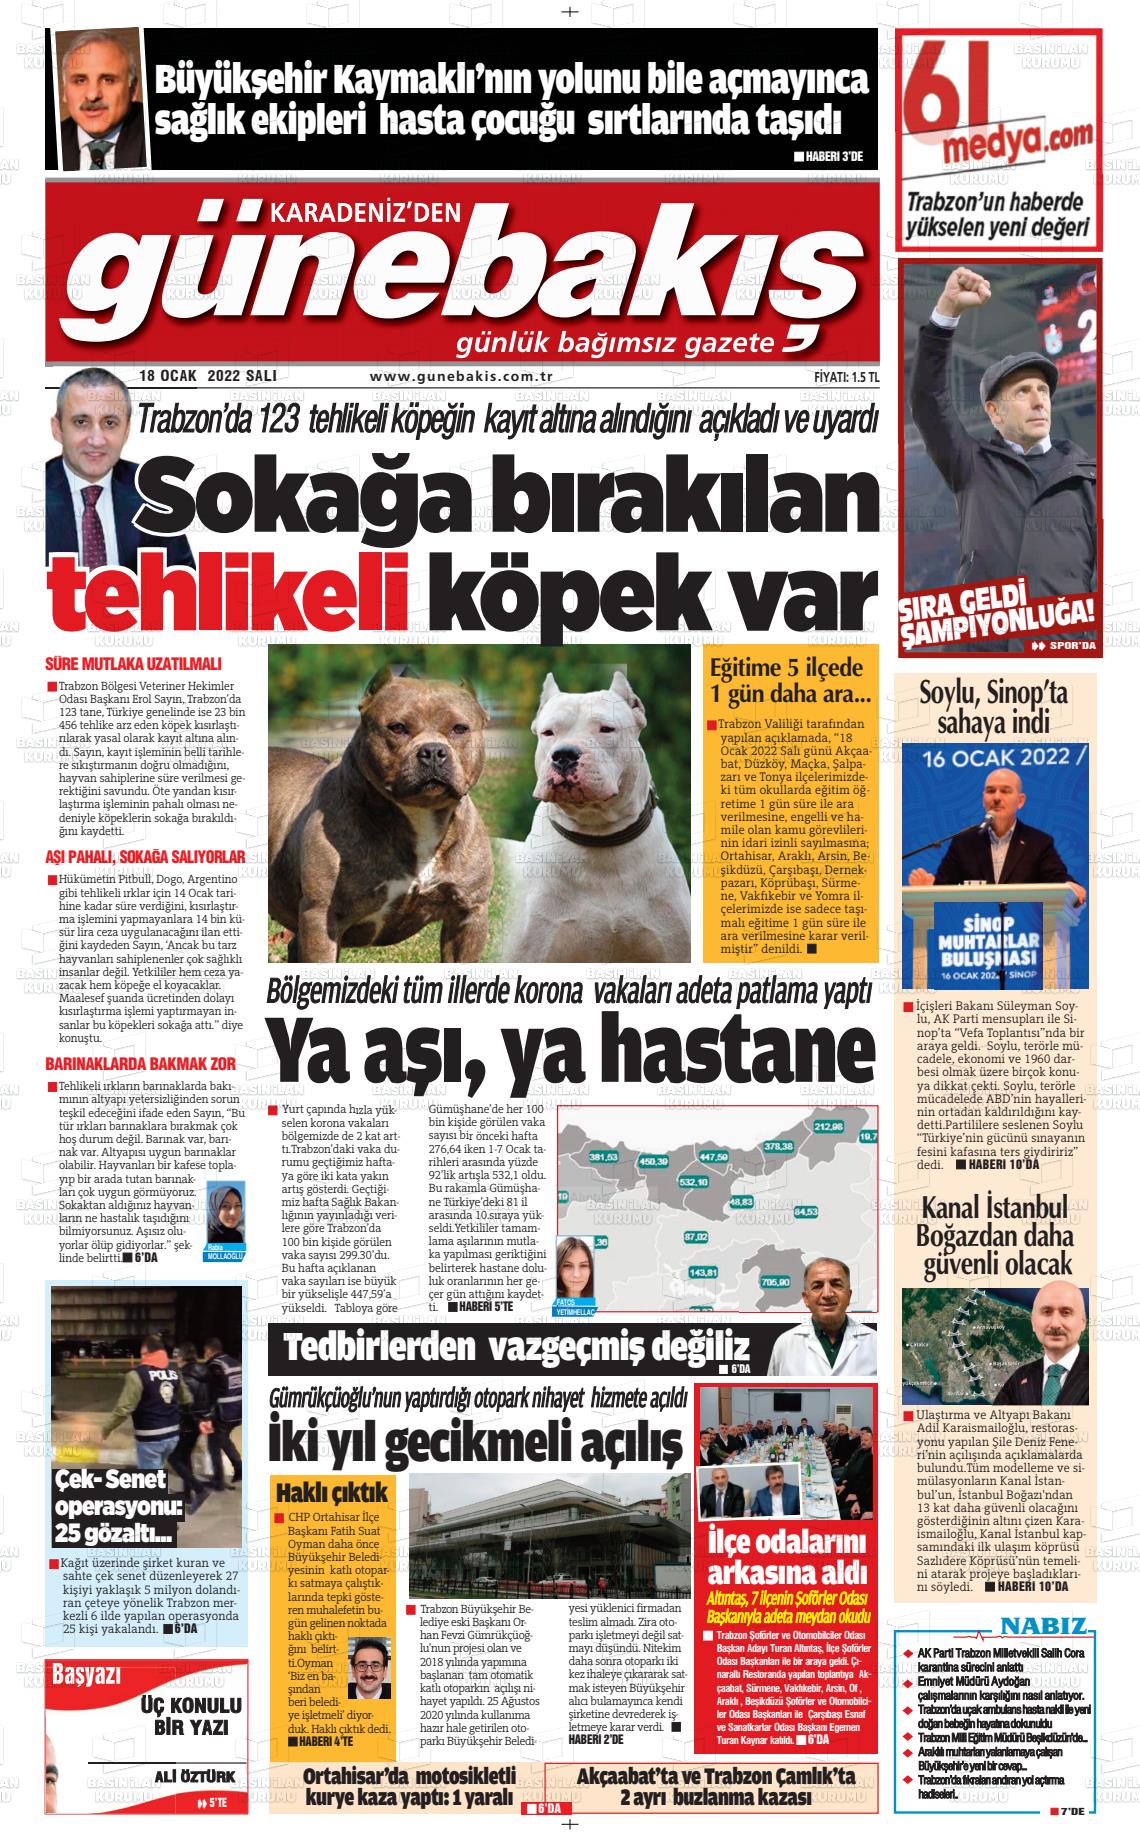 18 Ocak 2022 Günebakış Gazete Manşeti